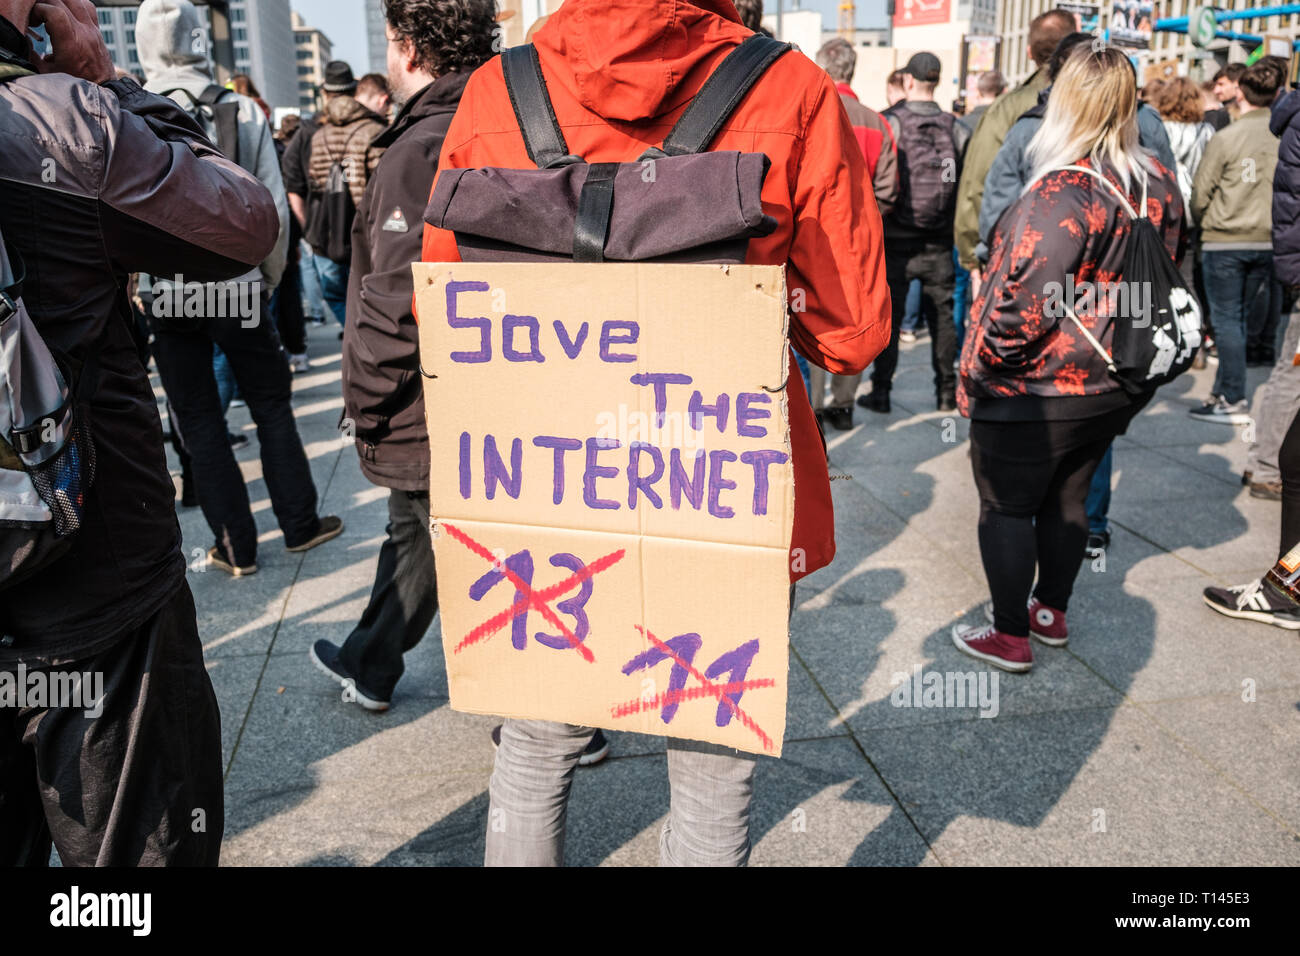 Berlino, Germania - 23 marzo 2019: dimostrazione contro UE riforma copyright / articolo 11 e articolo 13 a Berlino Germania. Foto Stock